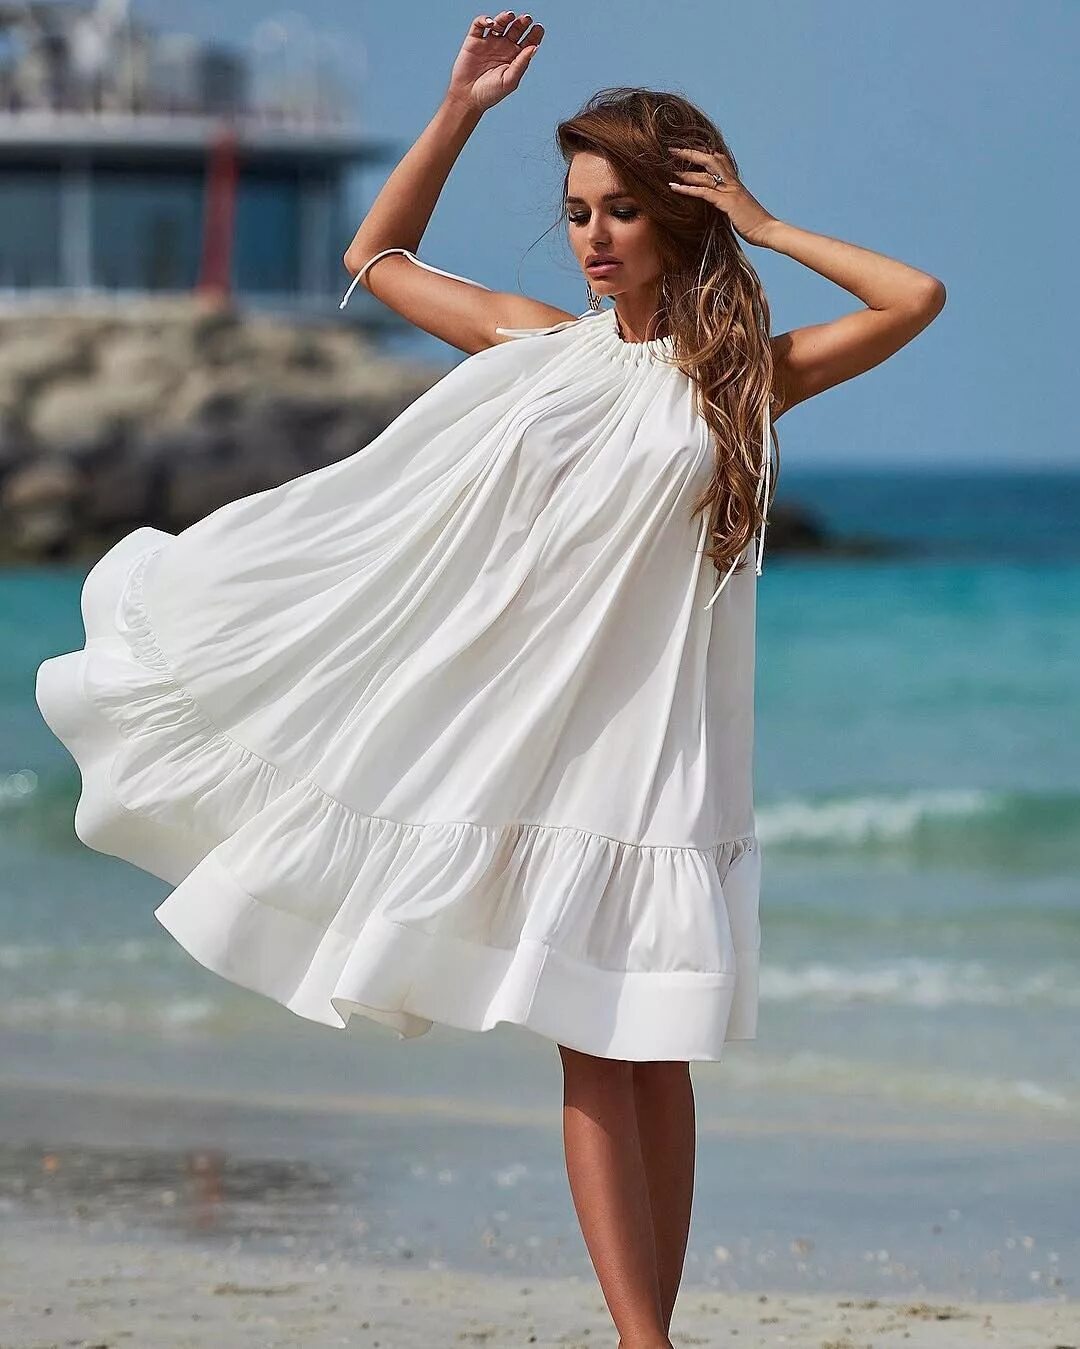 Легкое белое платье. Воздушное летнее платье. Белое летнее платье. Воздушное белое платье летнее. Купить летний свободный